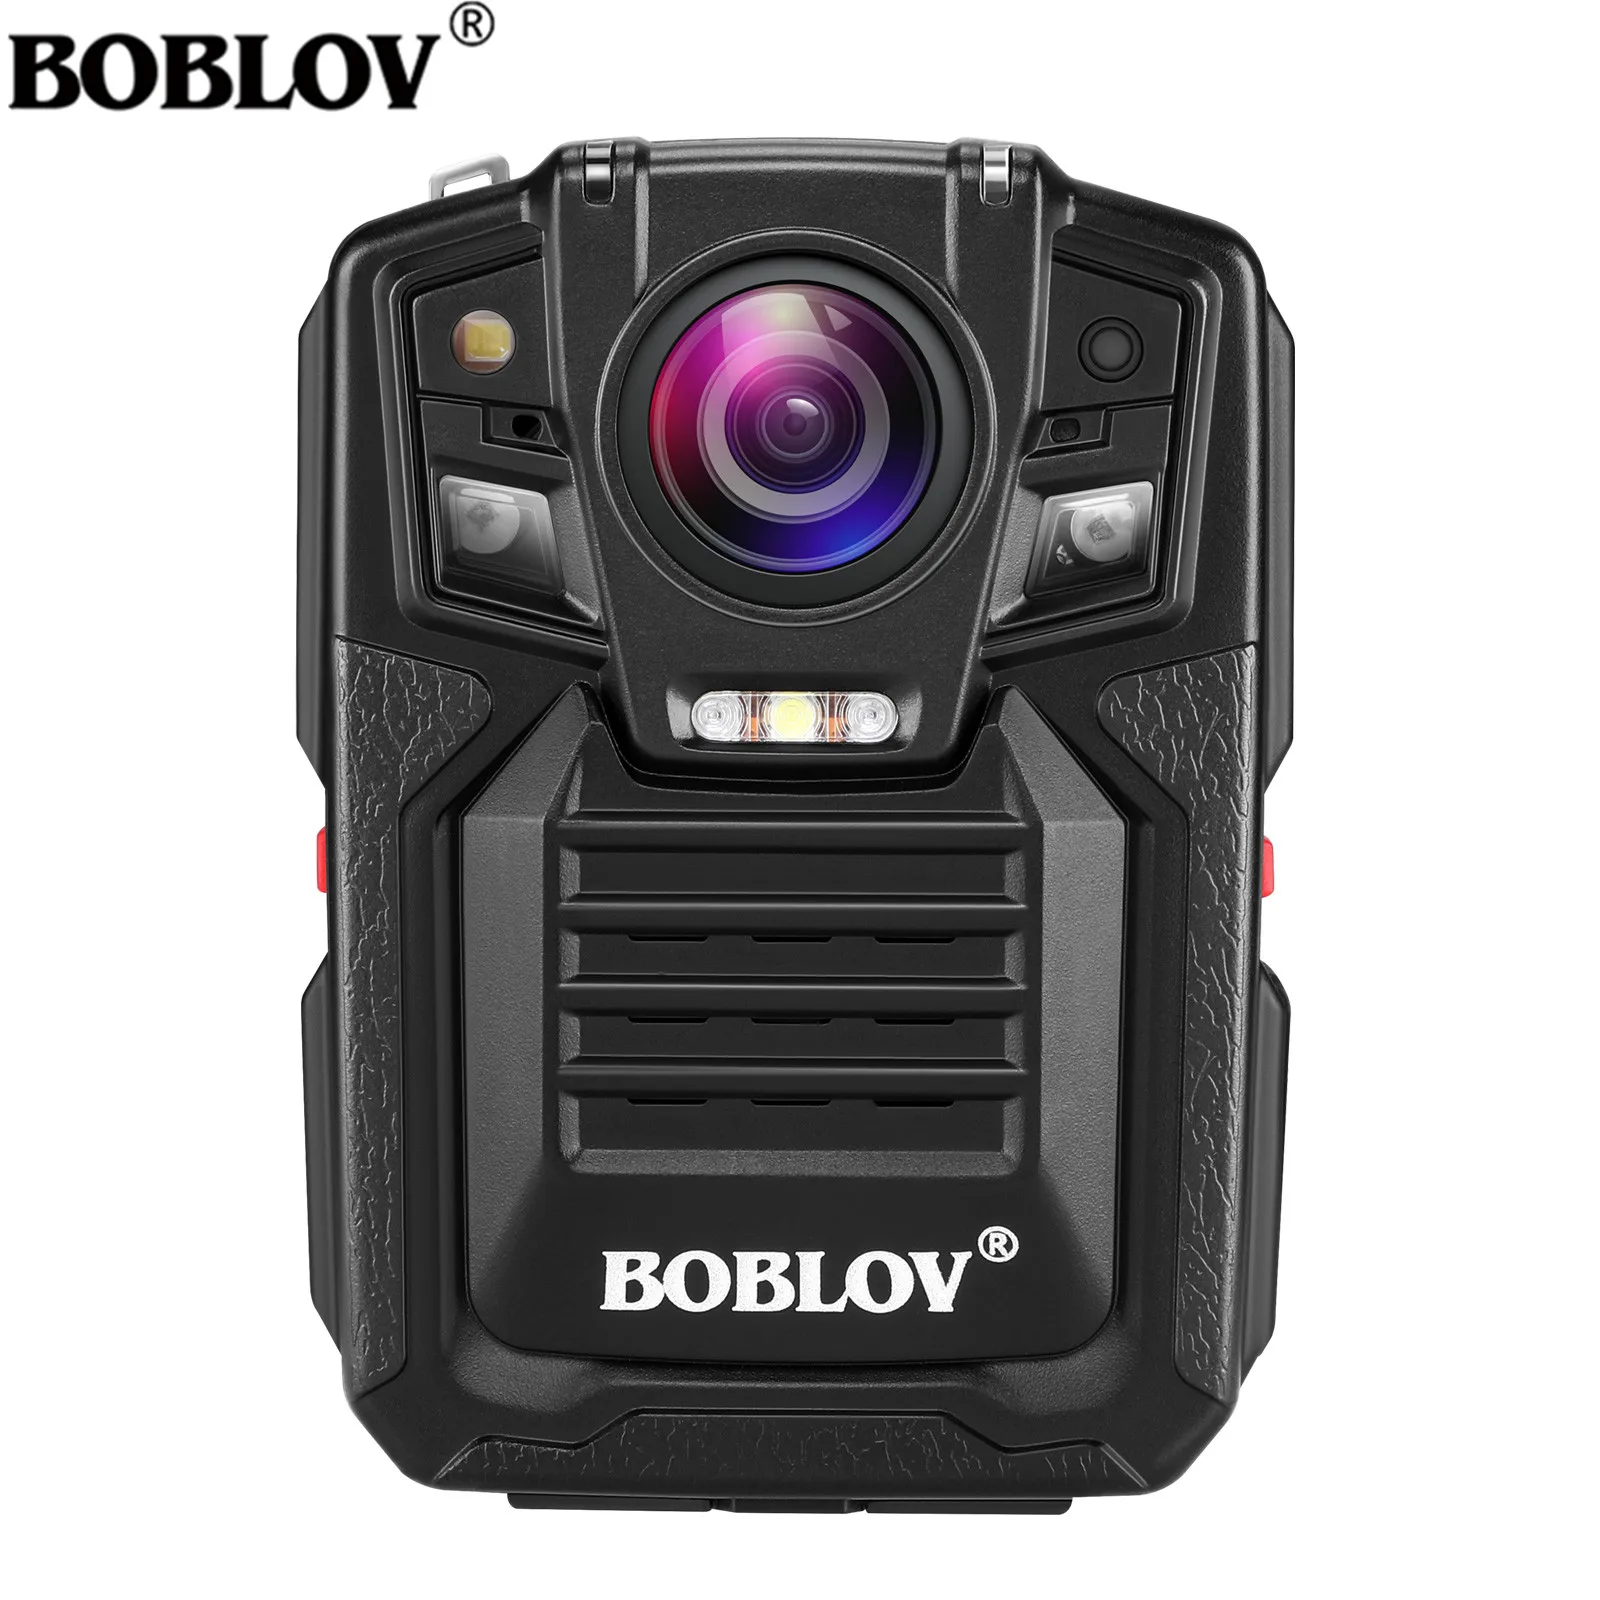 BOBLOV Body Camera s для правоохранительных органов 1080P 140 ° широкоугольная камера с